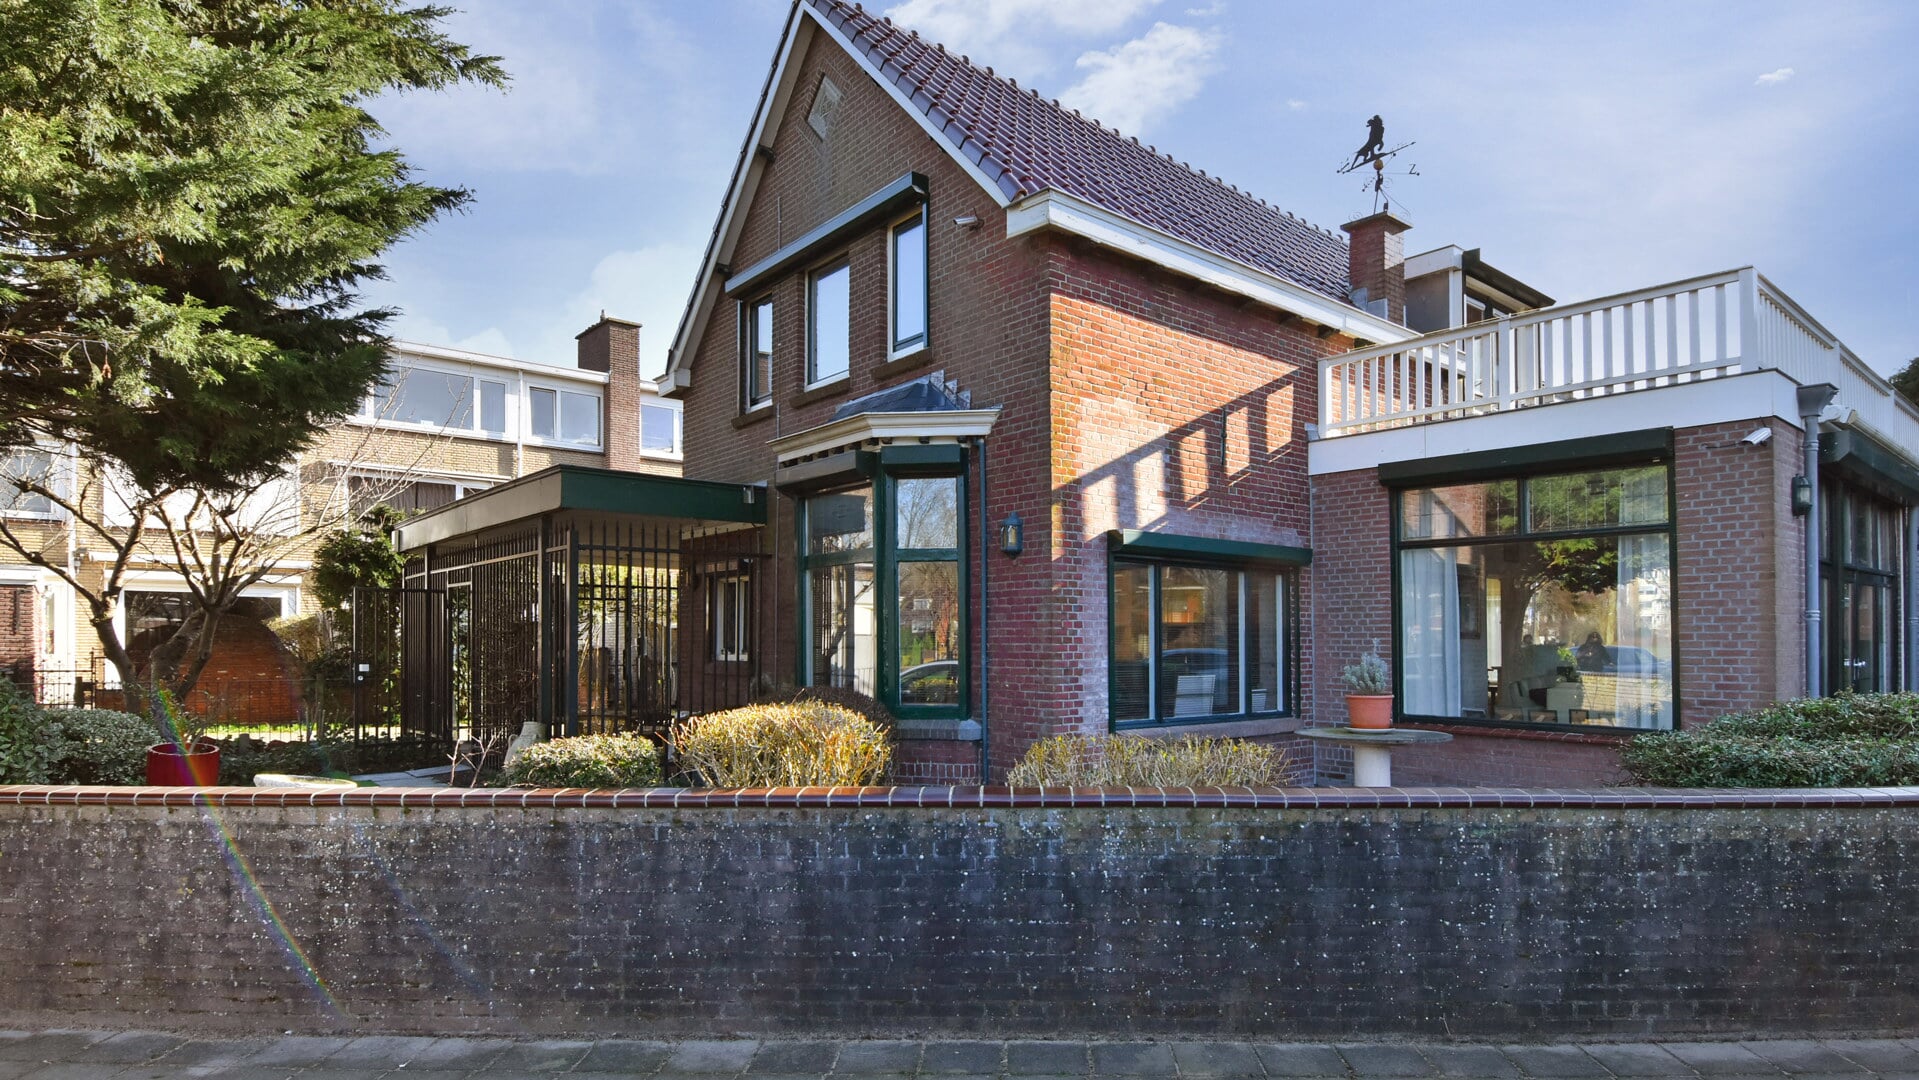 Ontdek de charme van vrijstaand wonen aan de vliet met deze bijzondere woning aan de Delftweg 1.